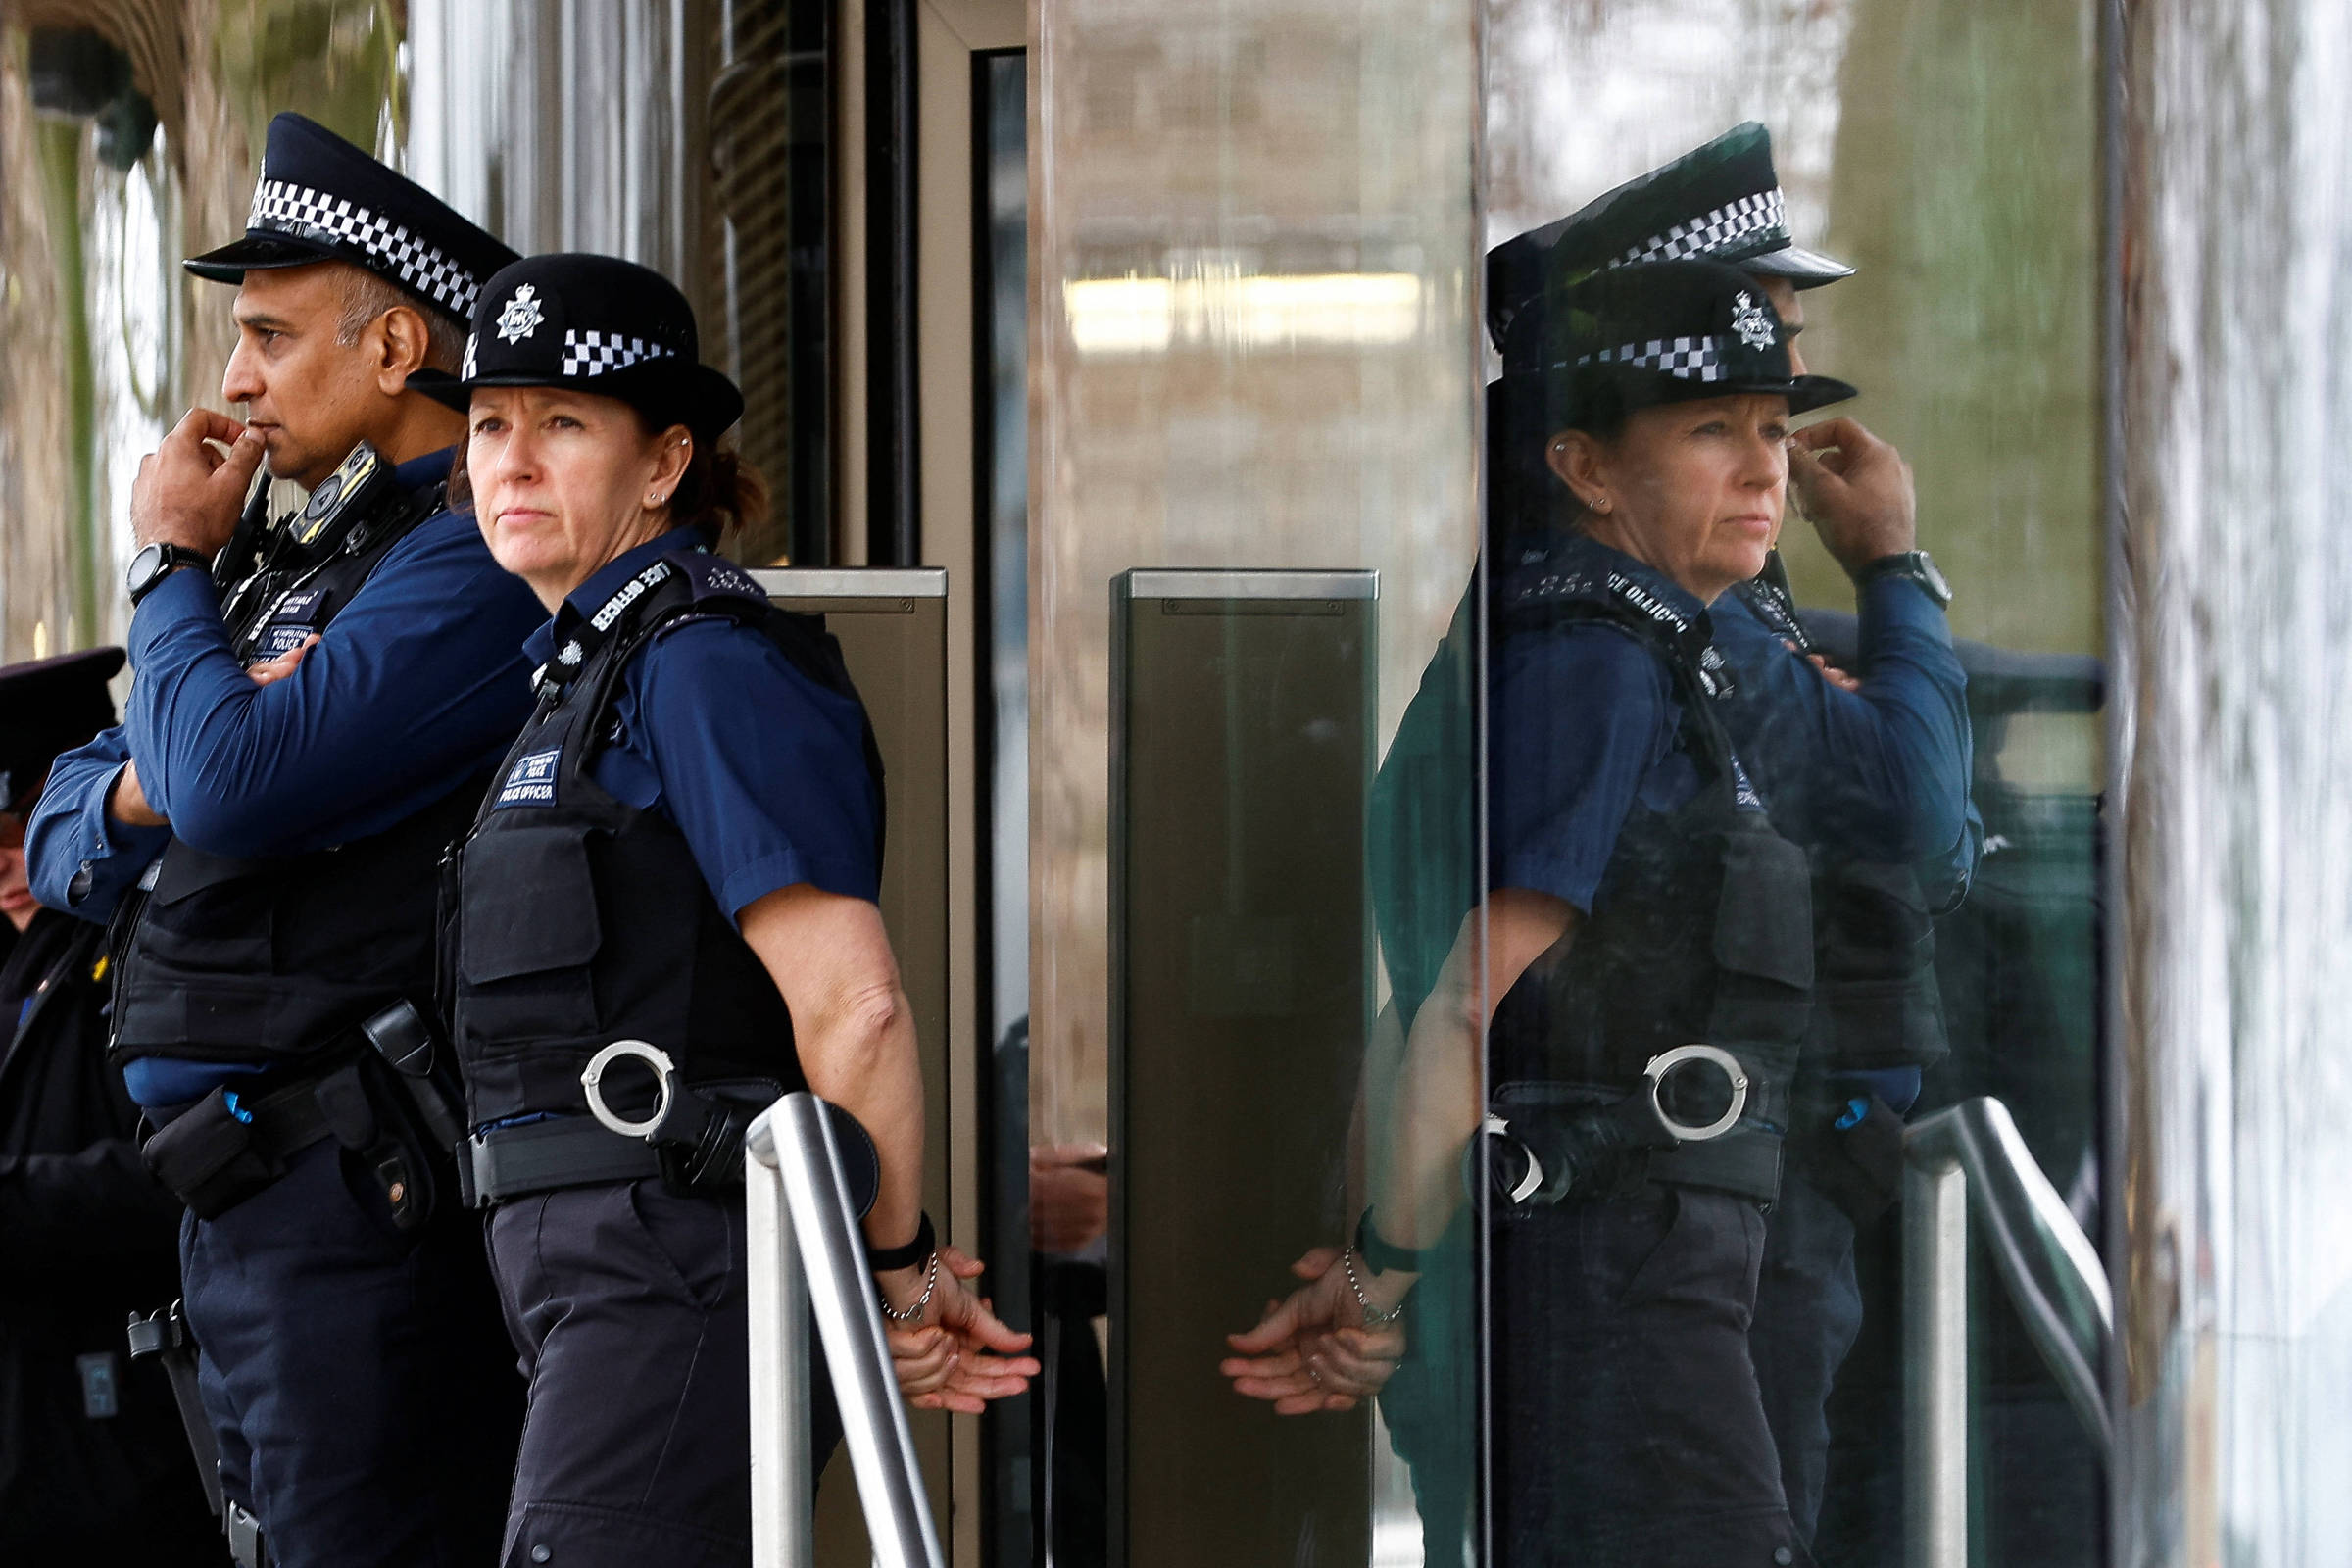 Polícia britânica faz rusga em Birmingham - União Europeia